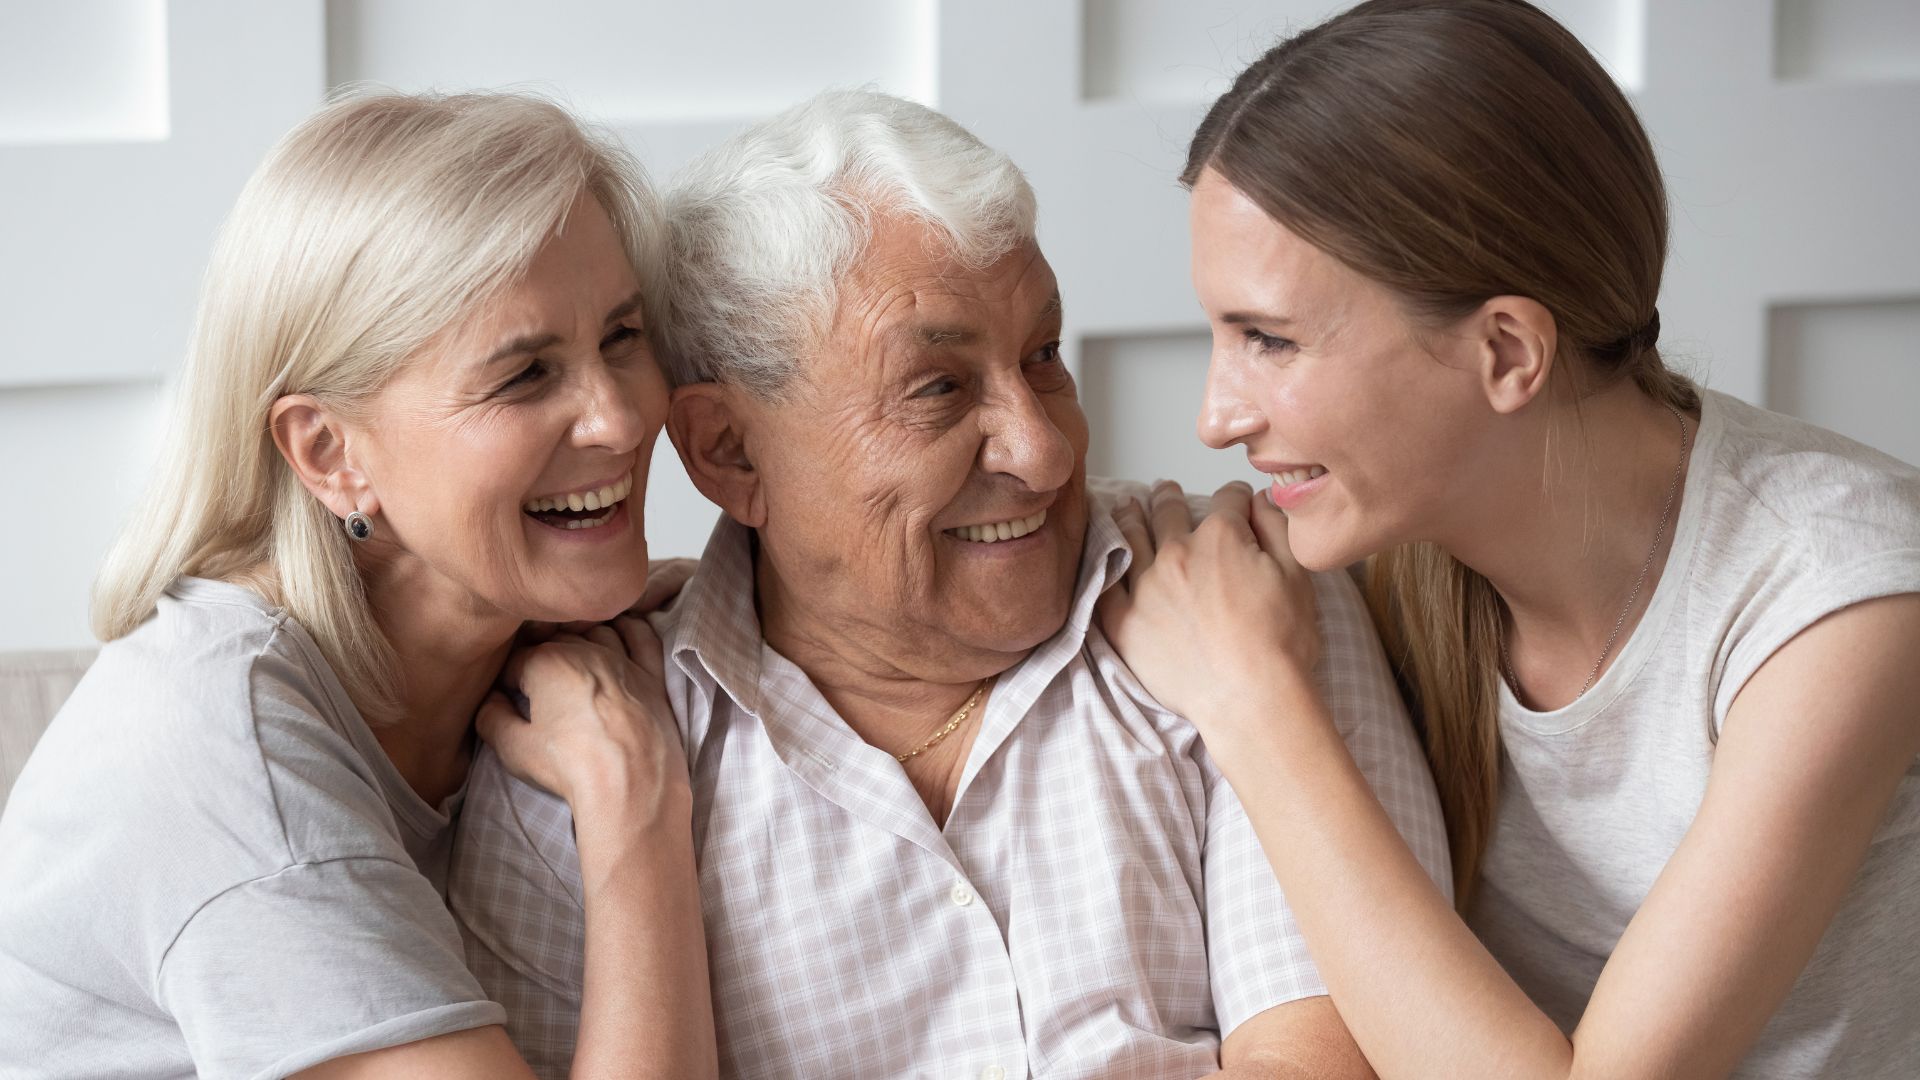 Imagem dos pais com sua filha, os três estão sorrindo e juntos um do outro.